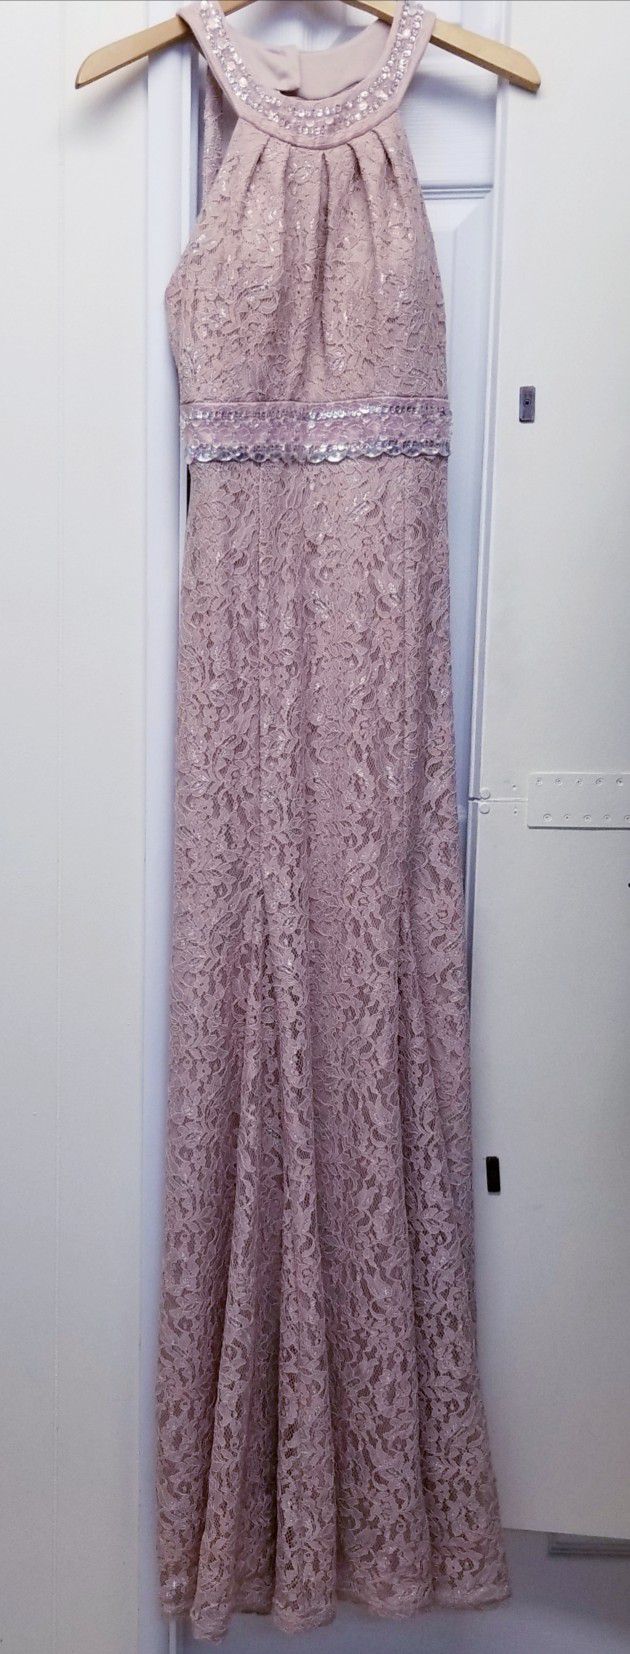 Long Lace Dress Size 7